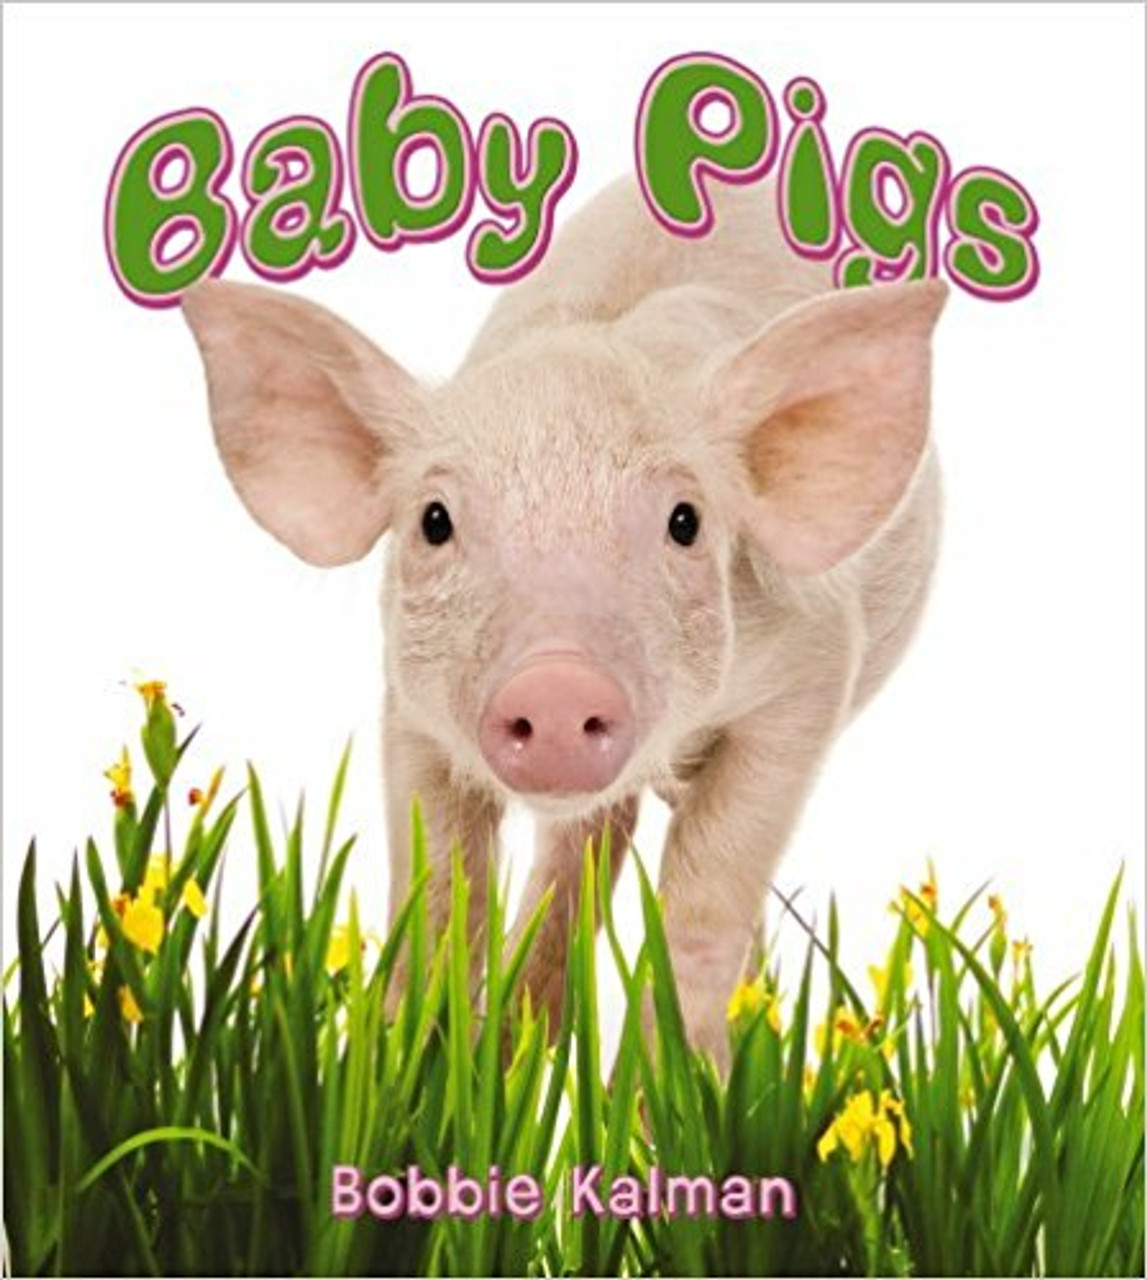 Baby Pigs (Paperback) by Bobbie Kalman